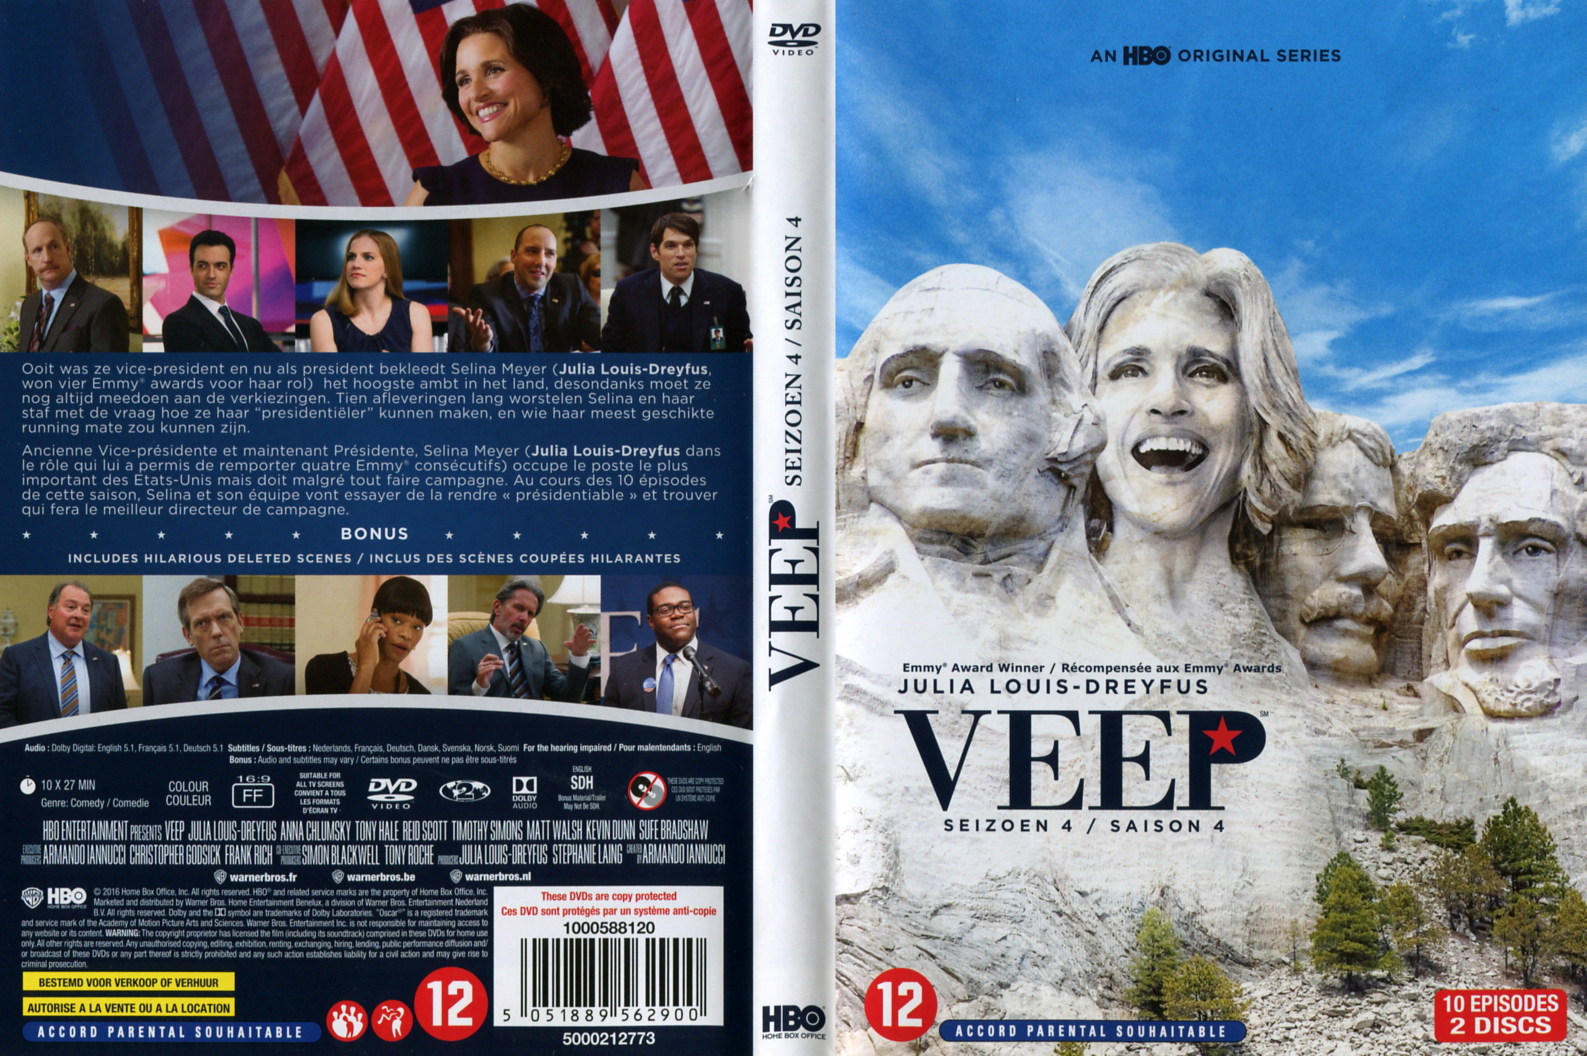 Jaquette DVD Veep Saison 4